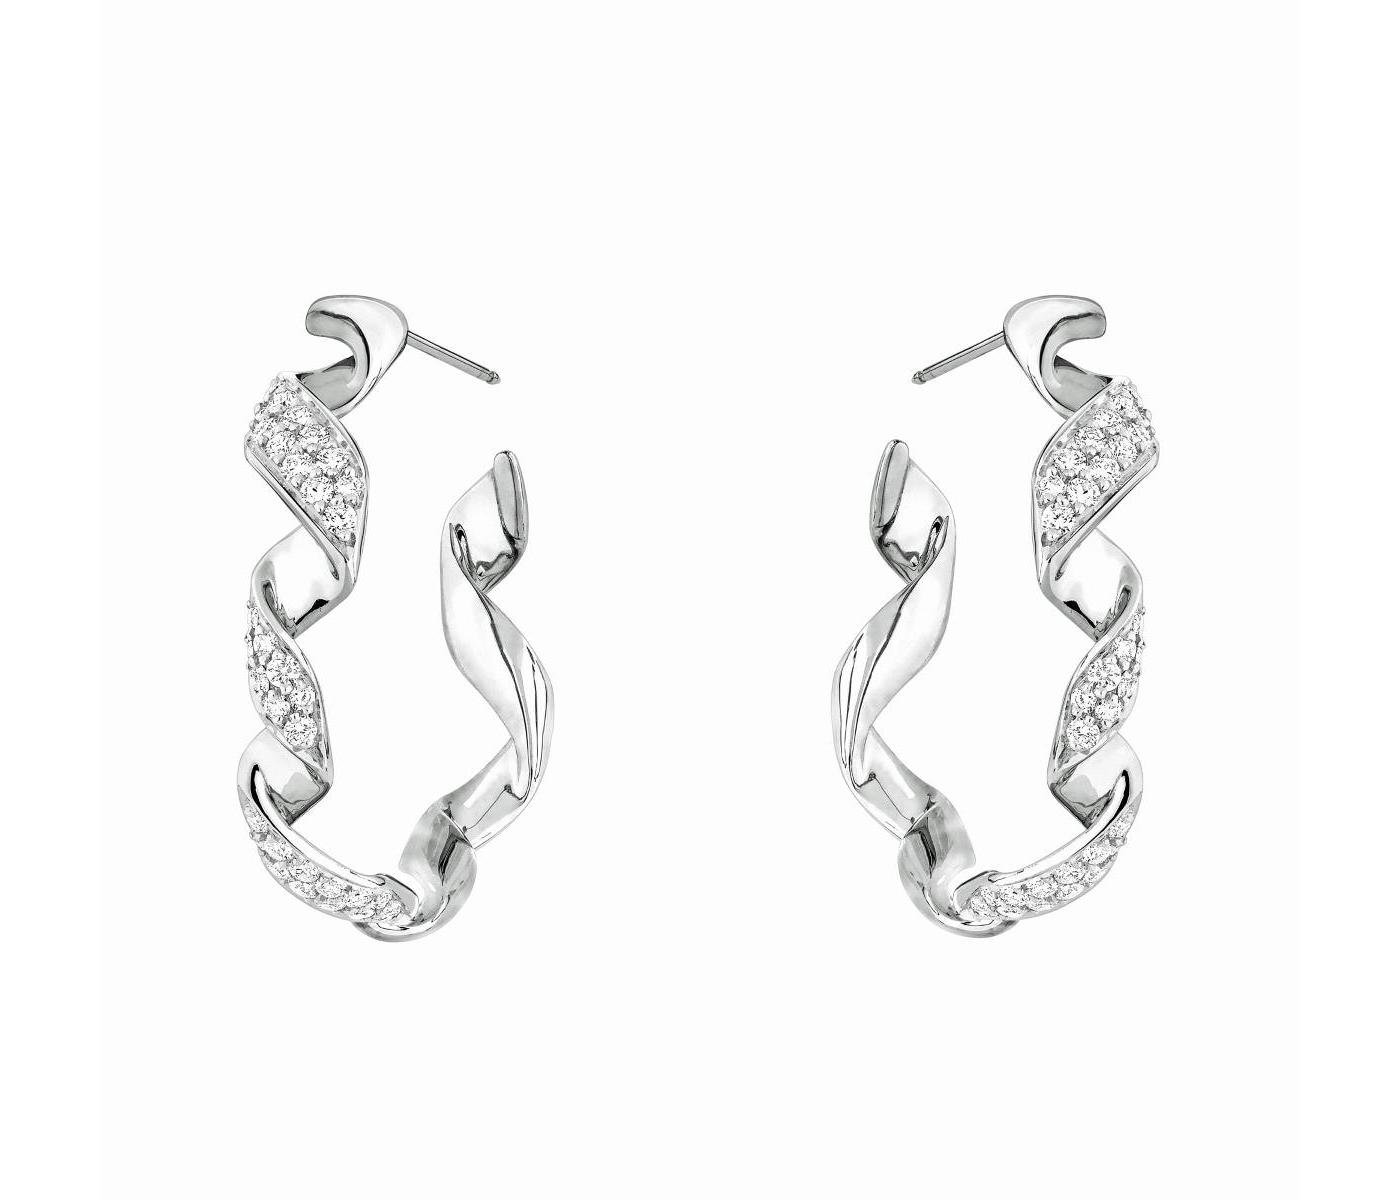 Earrings by Dior